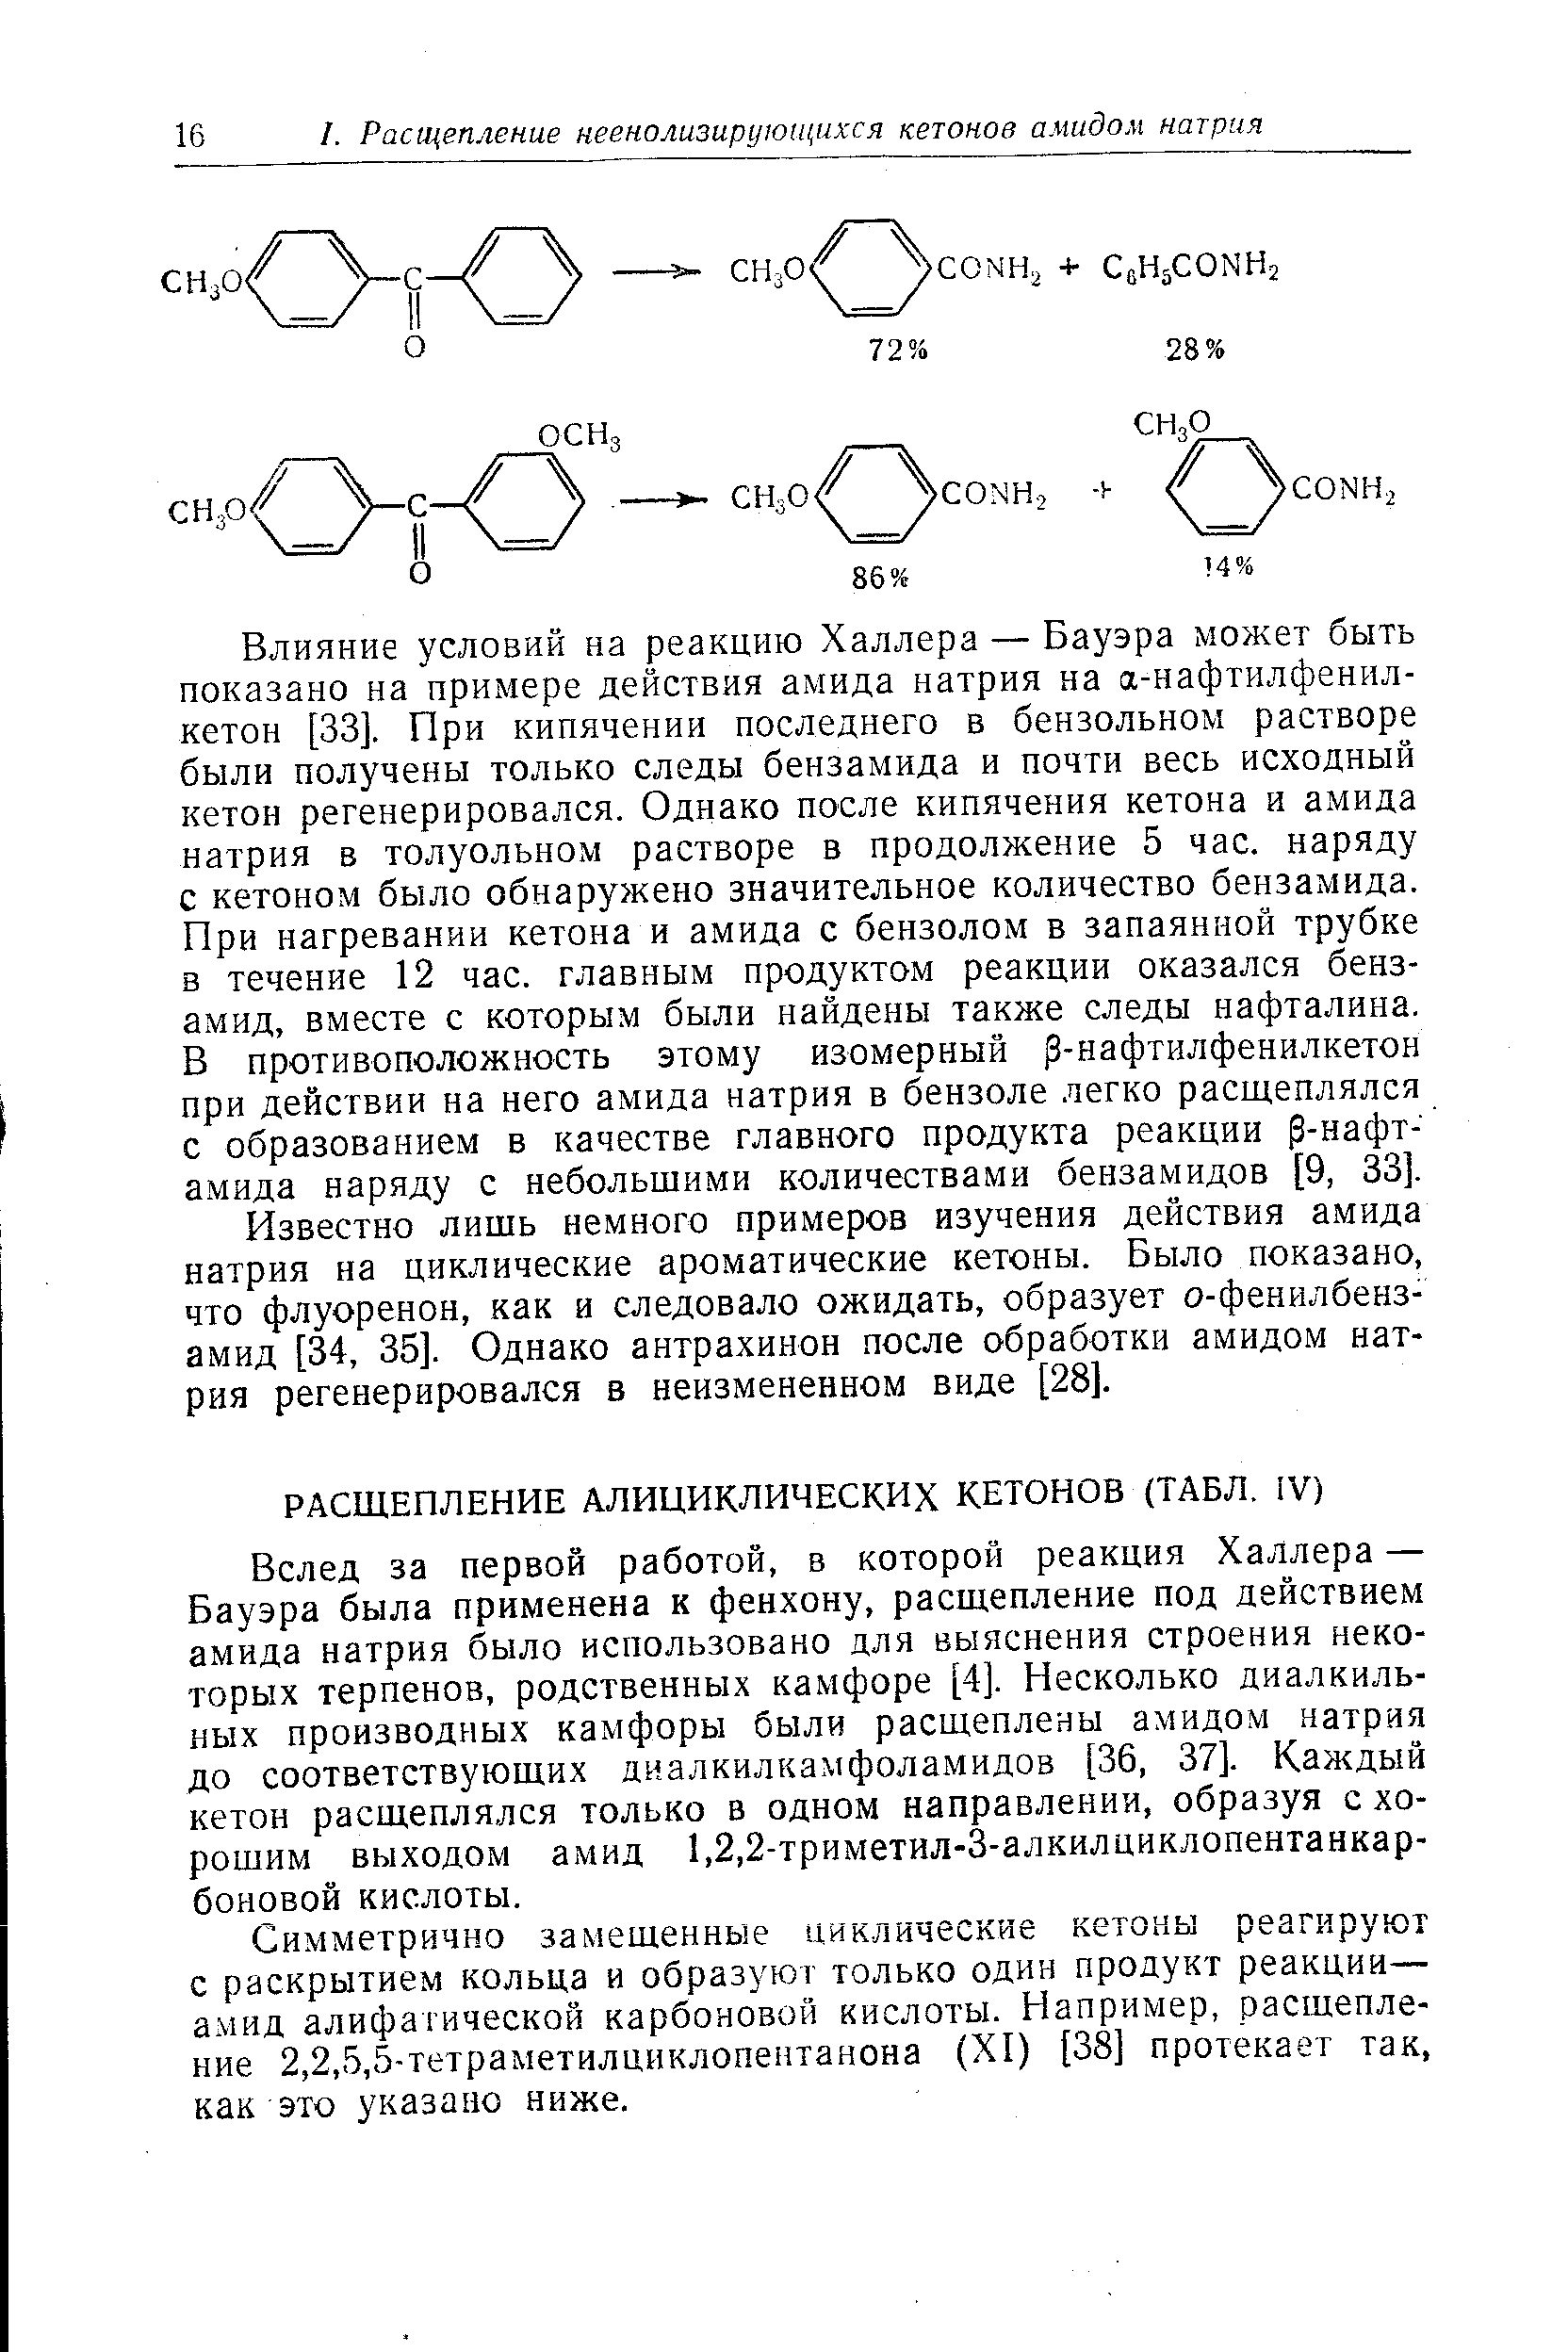 Симметрично замещенные циклические кетоны реагируют с раскрытием кольца и образуют только один продукт реакции— а.мид алифатической карбоновой кислоты. Например, расщепление 2,2,5,5-тетраметилциклопентанона (XI) [38] протекает так, как это указано ниже.